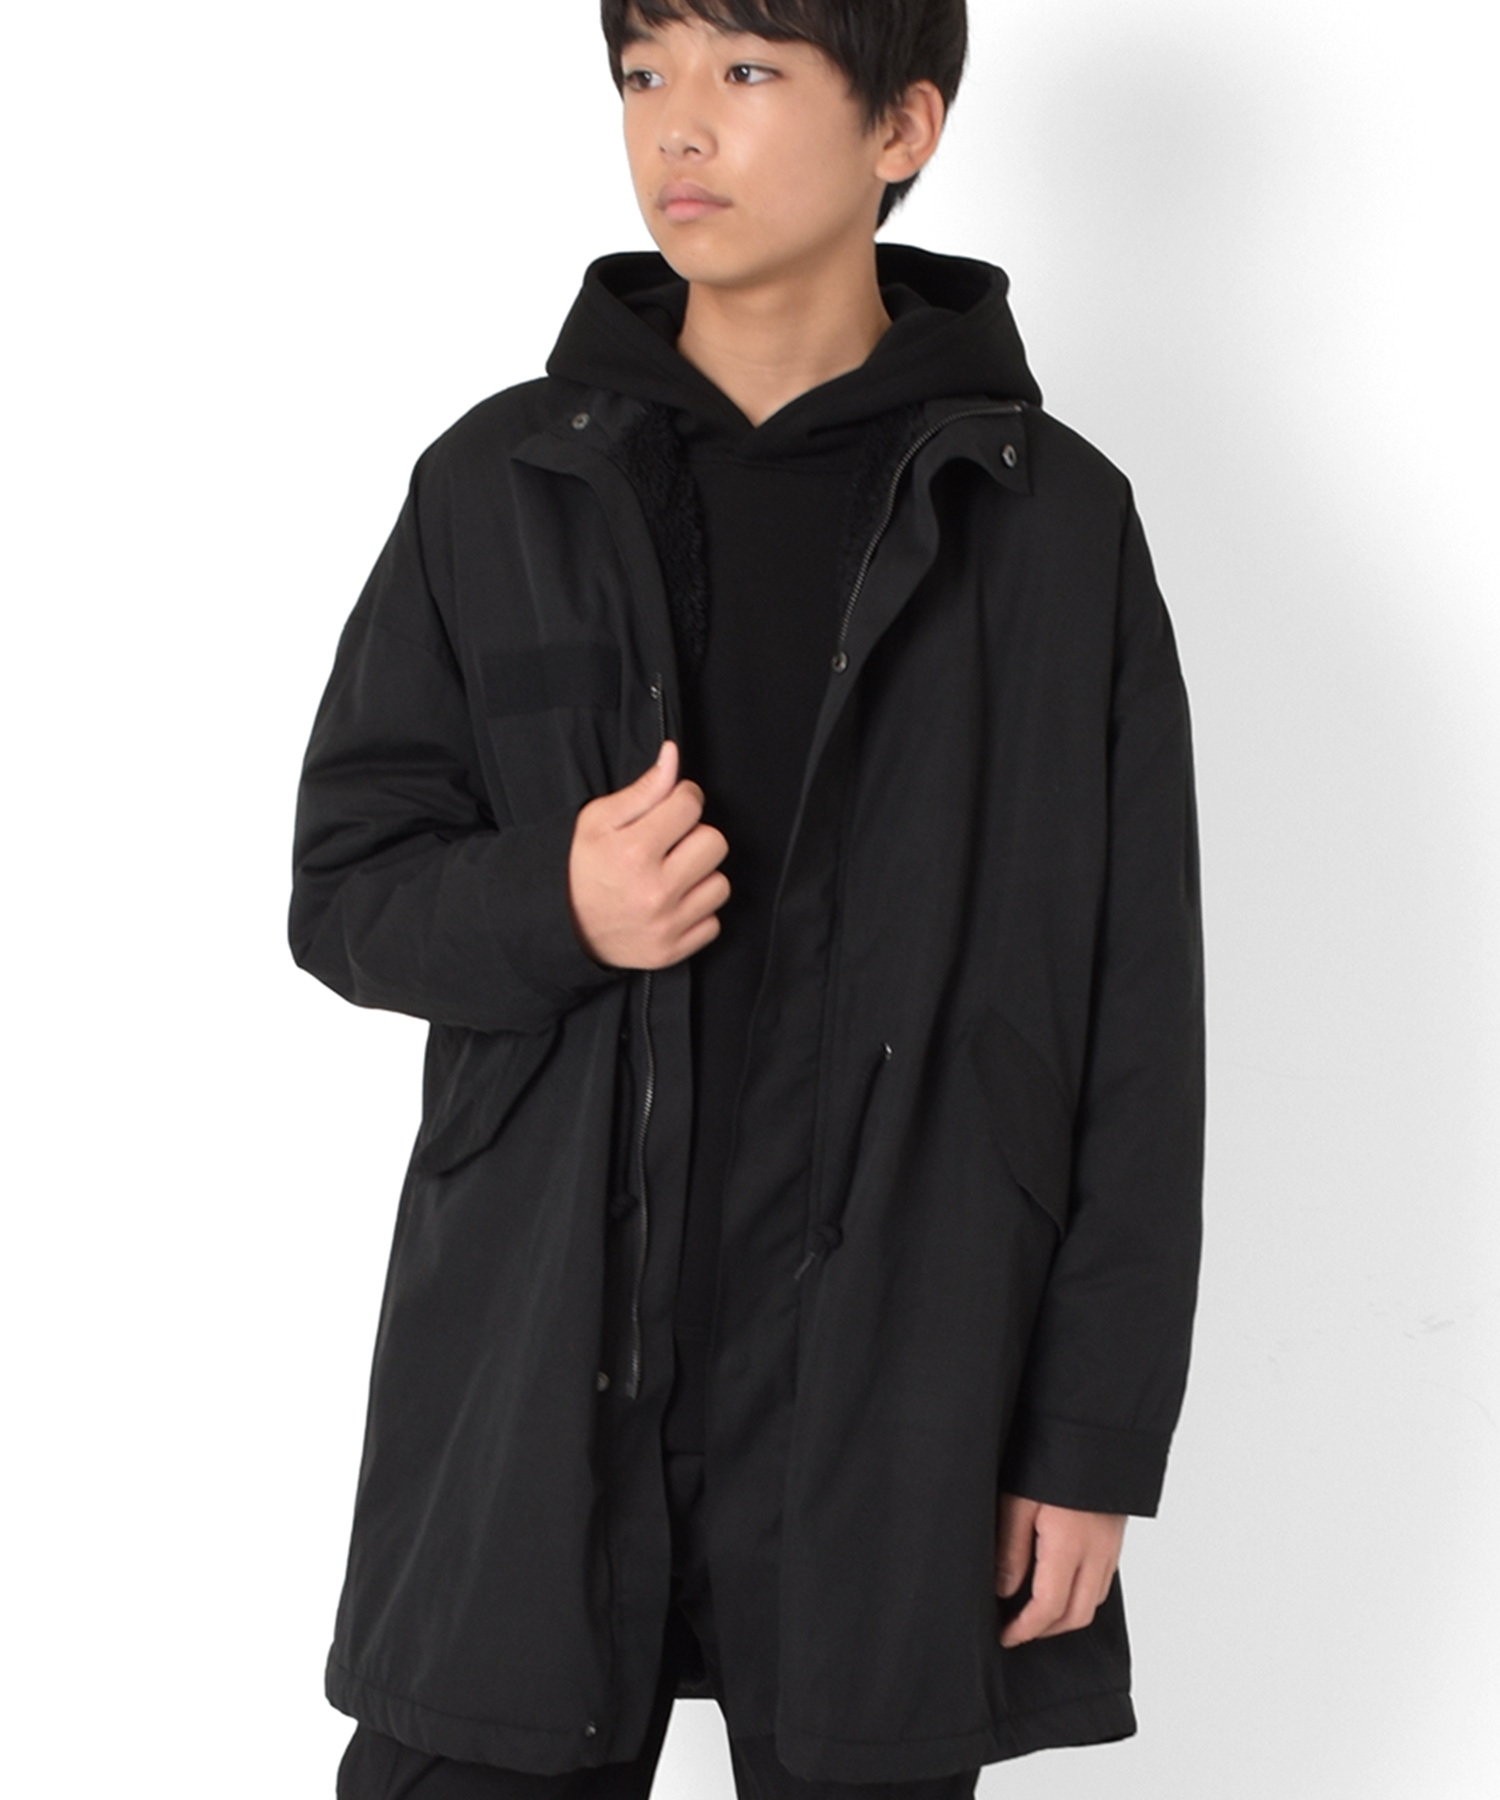 モッズコート・ミリタリーコート(ブラック・黒色)のファッション通販 